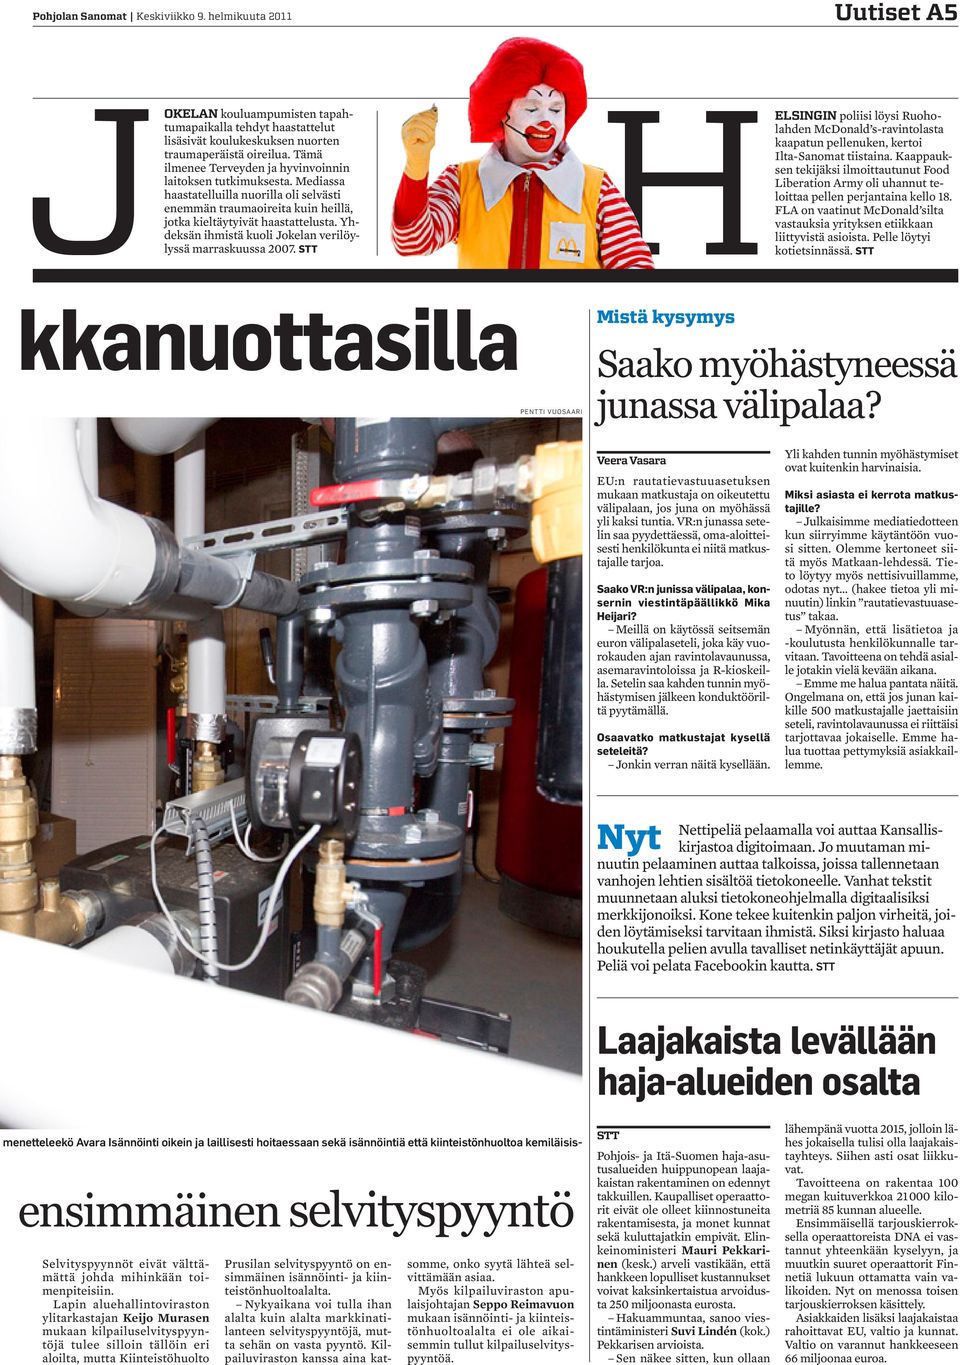 Yhdeksän ihmistä kuoli Jokelan verilöylyssä marraskuussa 2007. STT HELSINGIN poliisi löysi Ruoholahden McDonald s-ravintolasta kaapatun pellenuken, kertoi Ilta-Sanomat tiistaina.